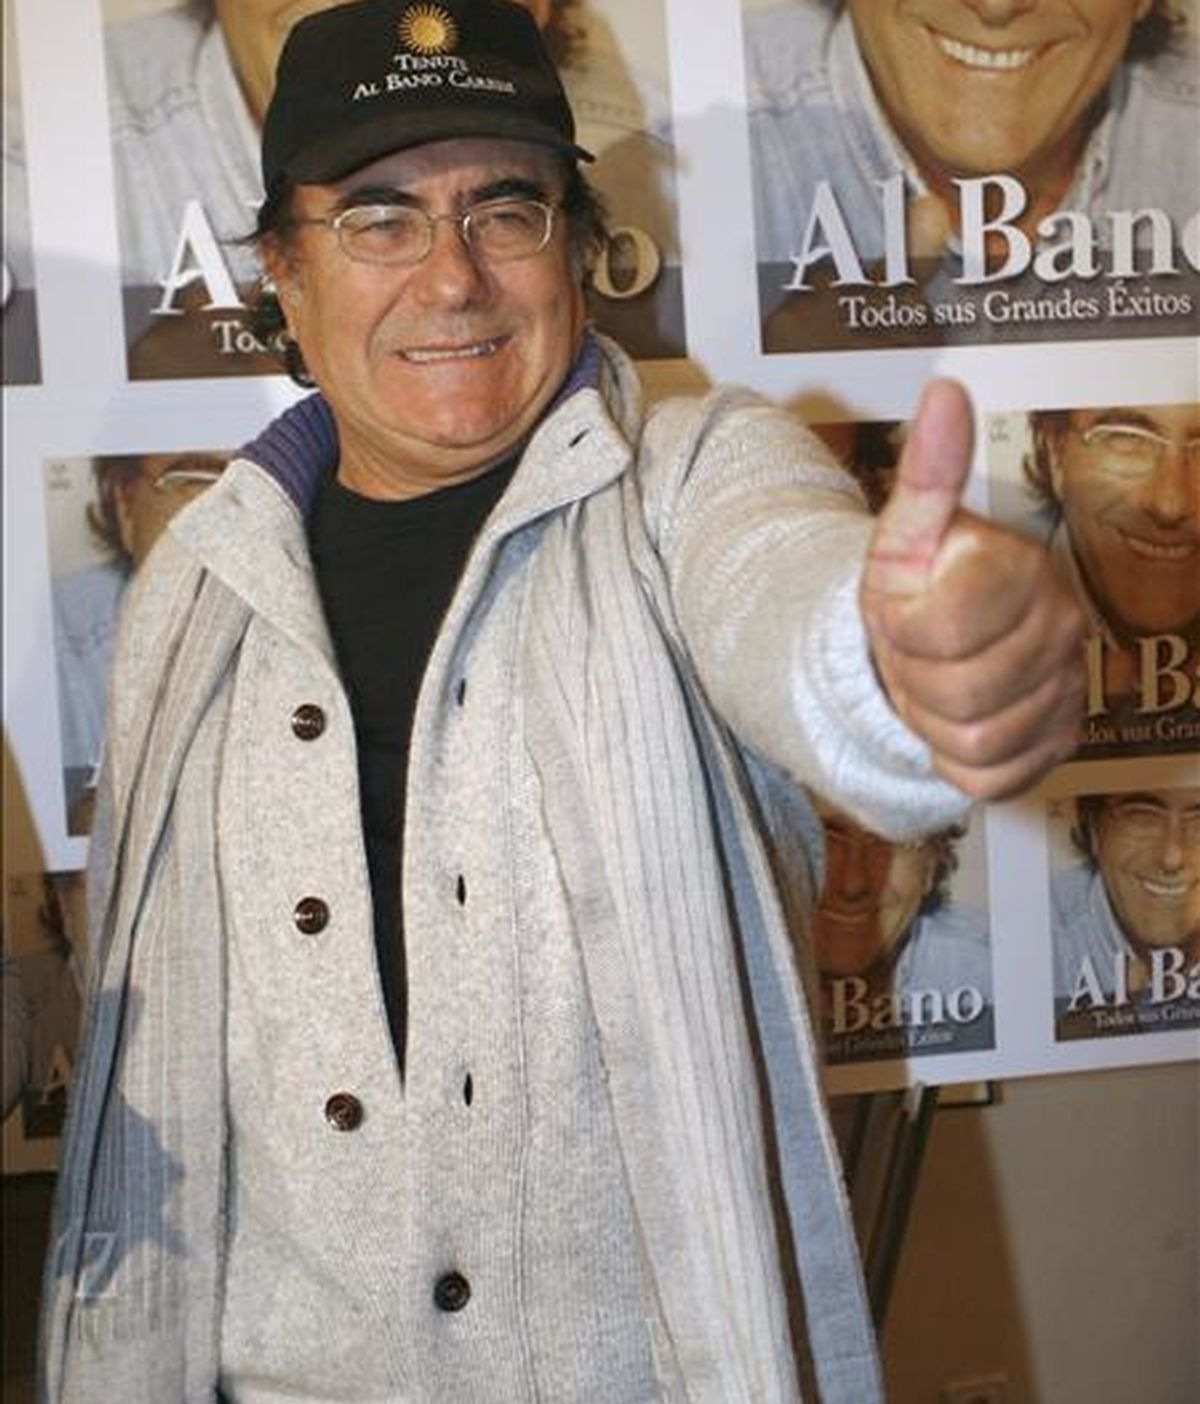 El cantante italiano Al Bano, durante la presentación de su nuevo CD-DVD, titulado "Todos sus grandes éxitos en español", en diciembre pasado, en Madrid. EFE